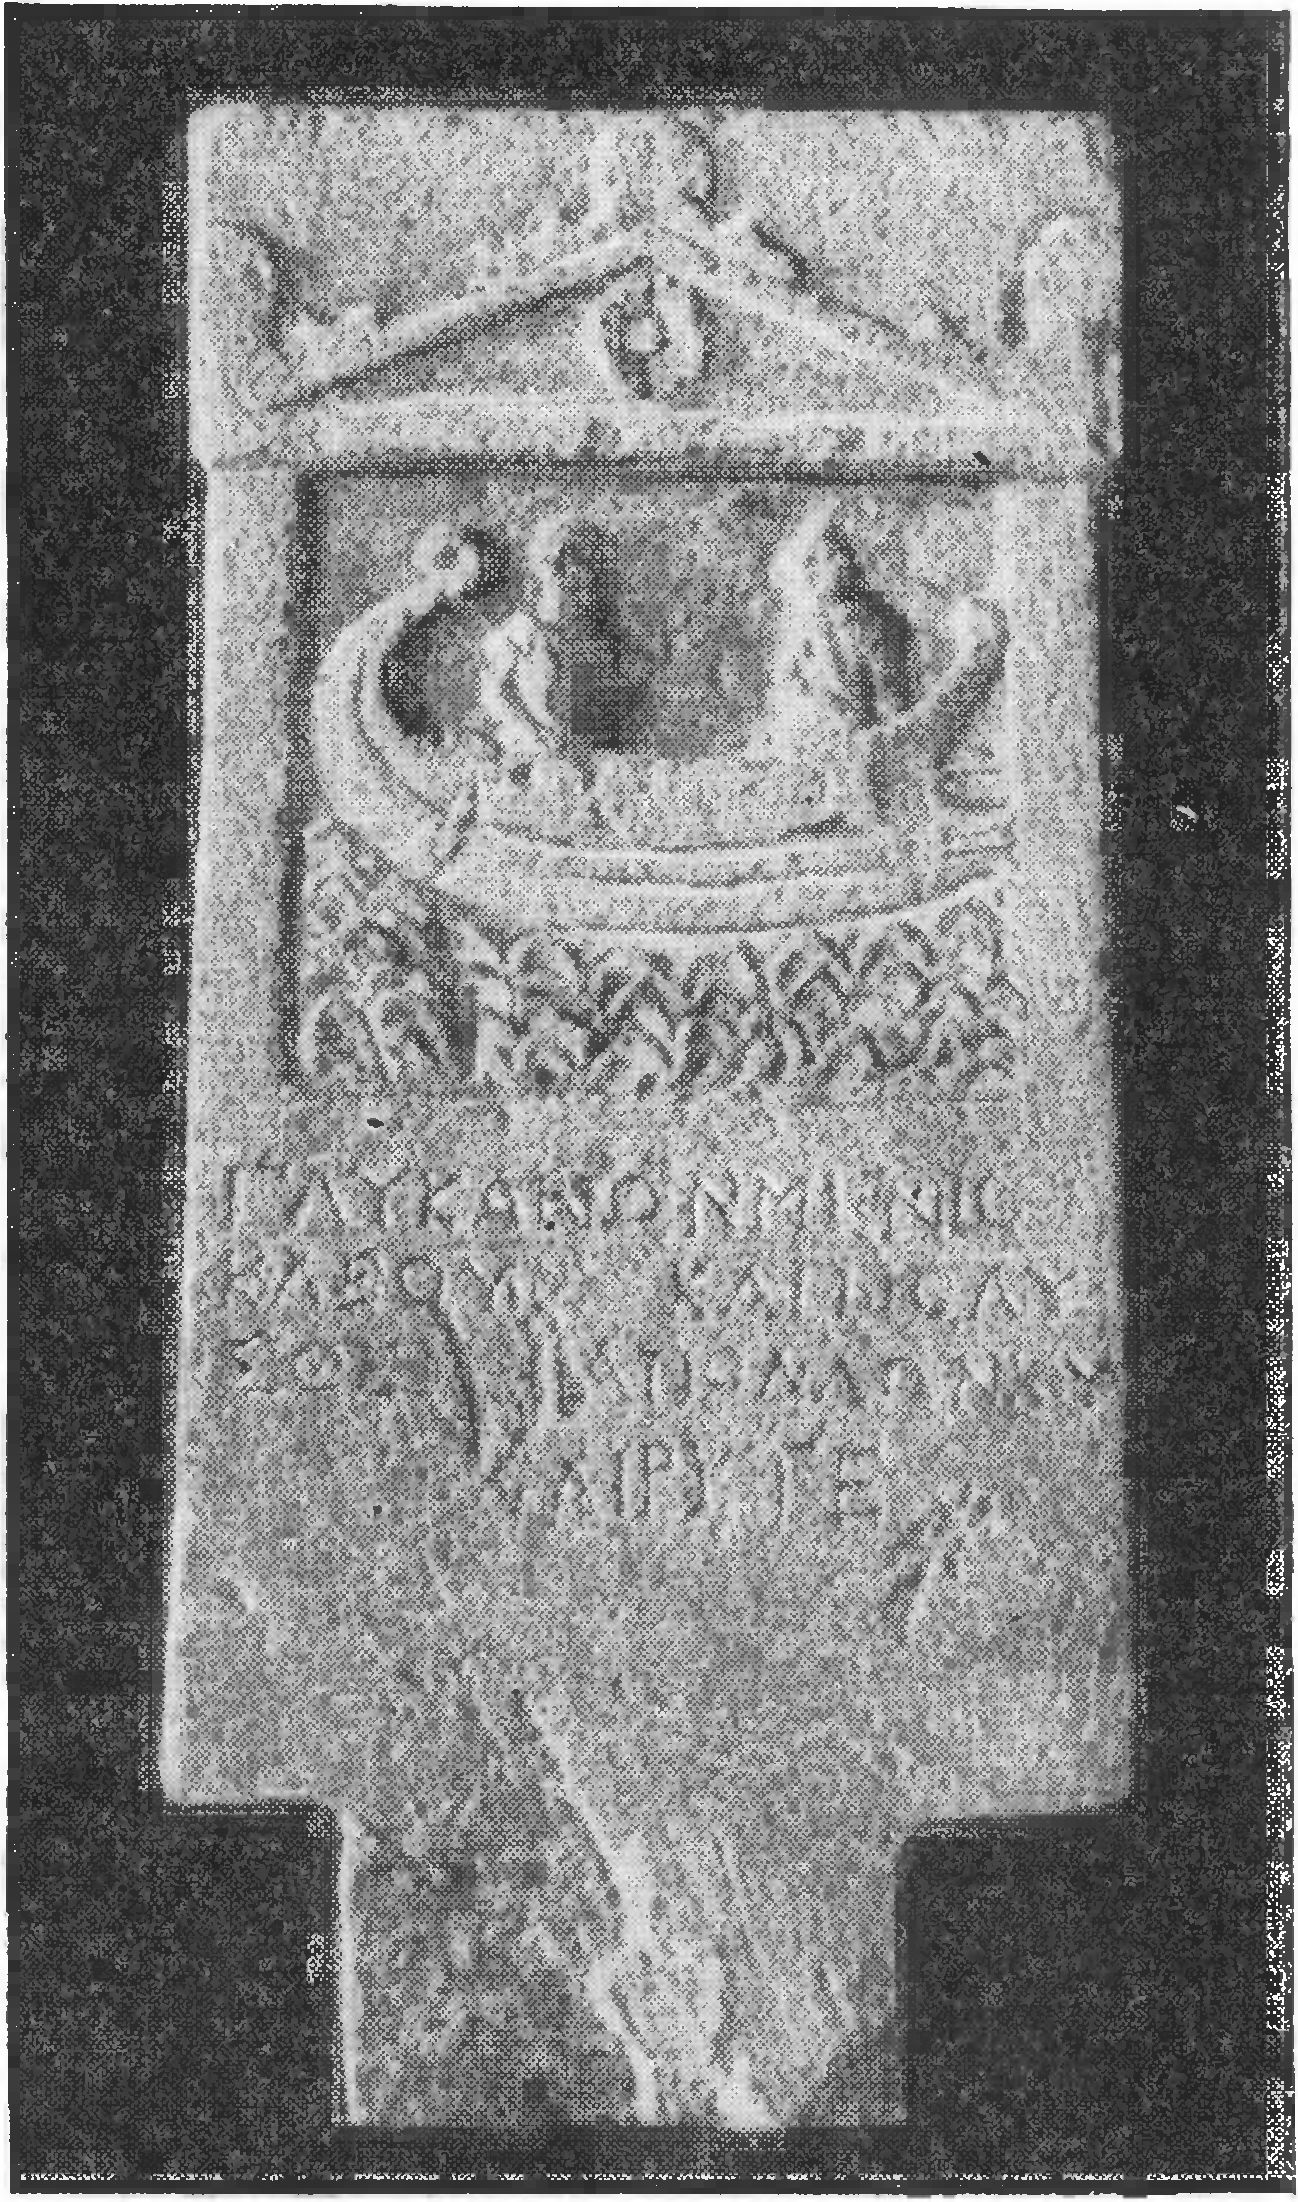 27. Боспорское надгробие Гликариона и Полисфена с изображением корабля